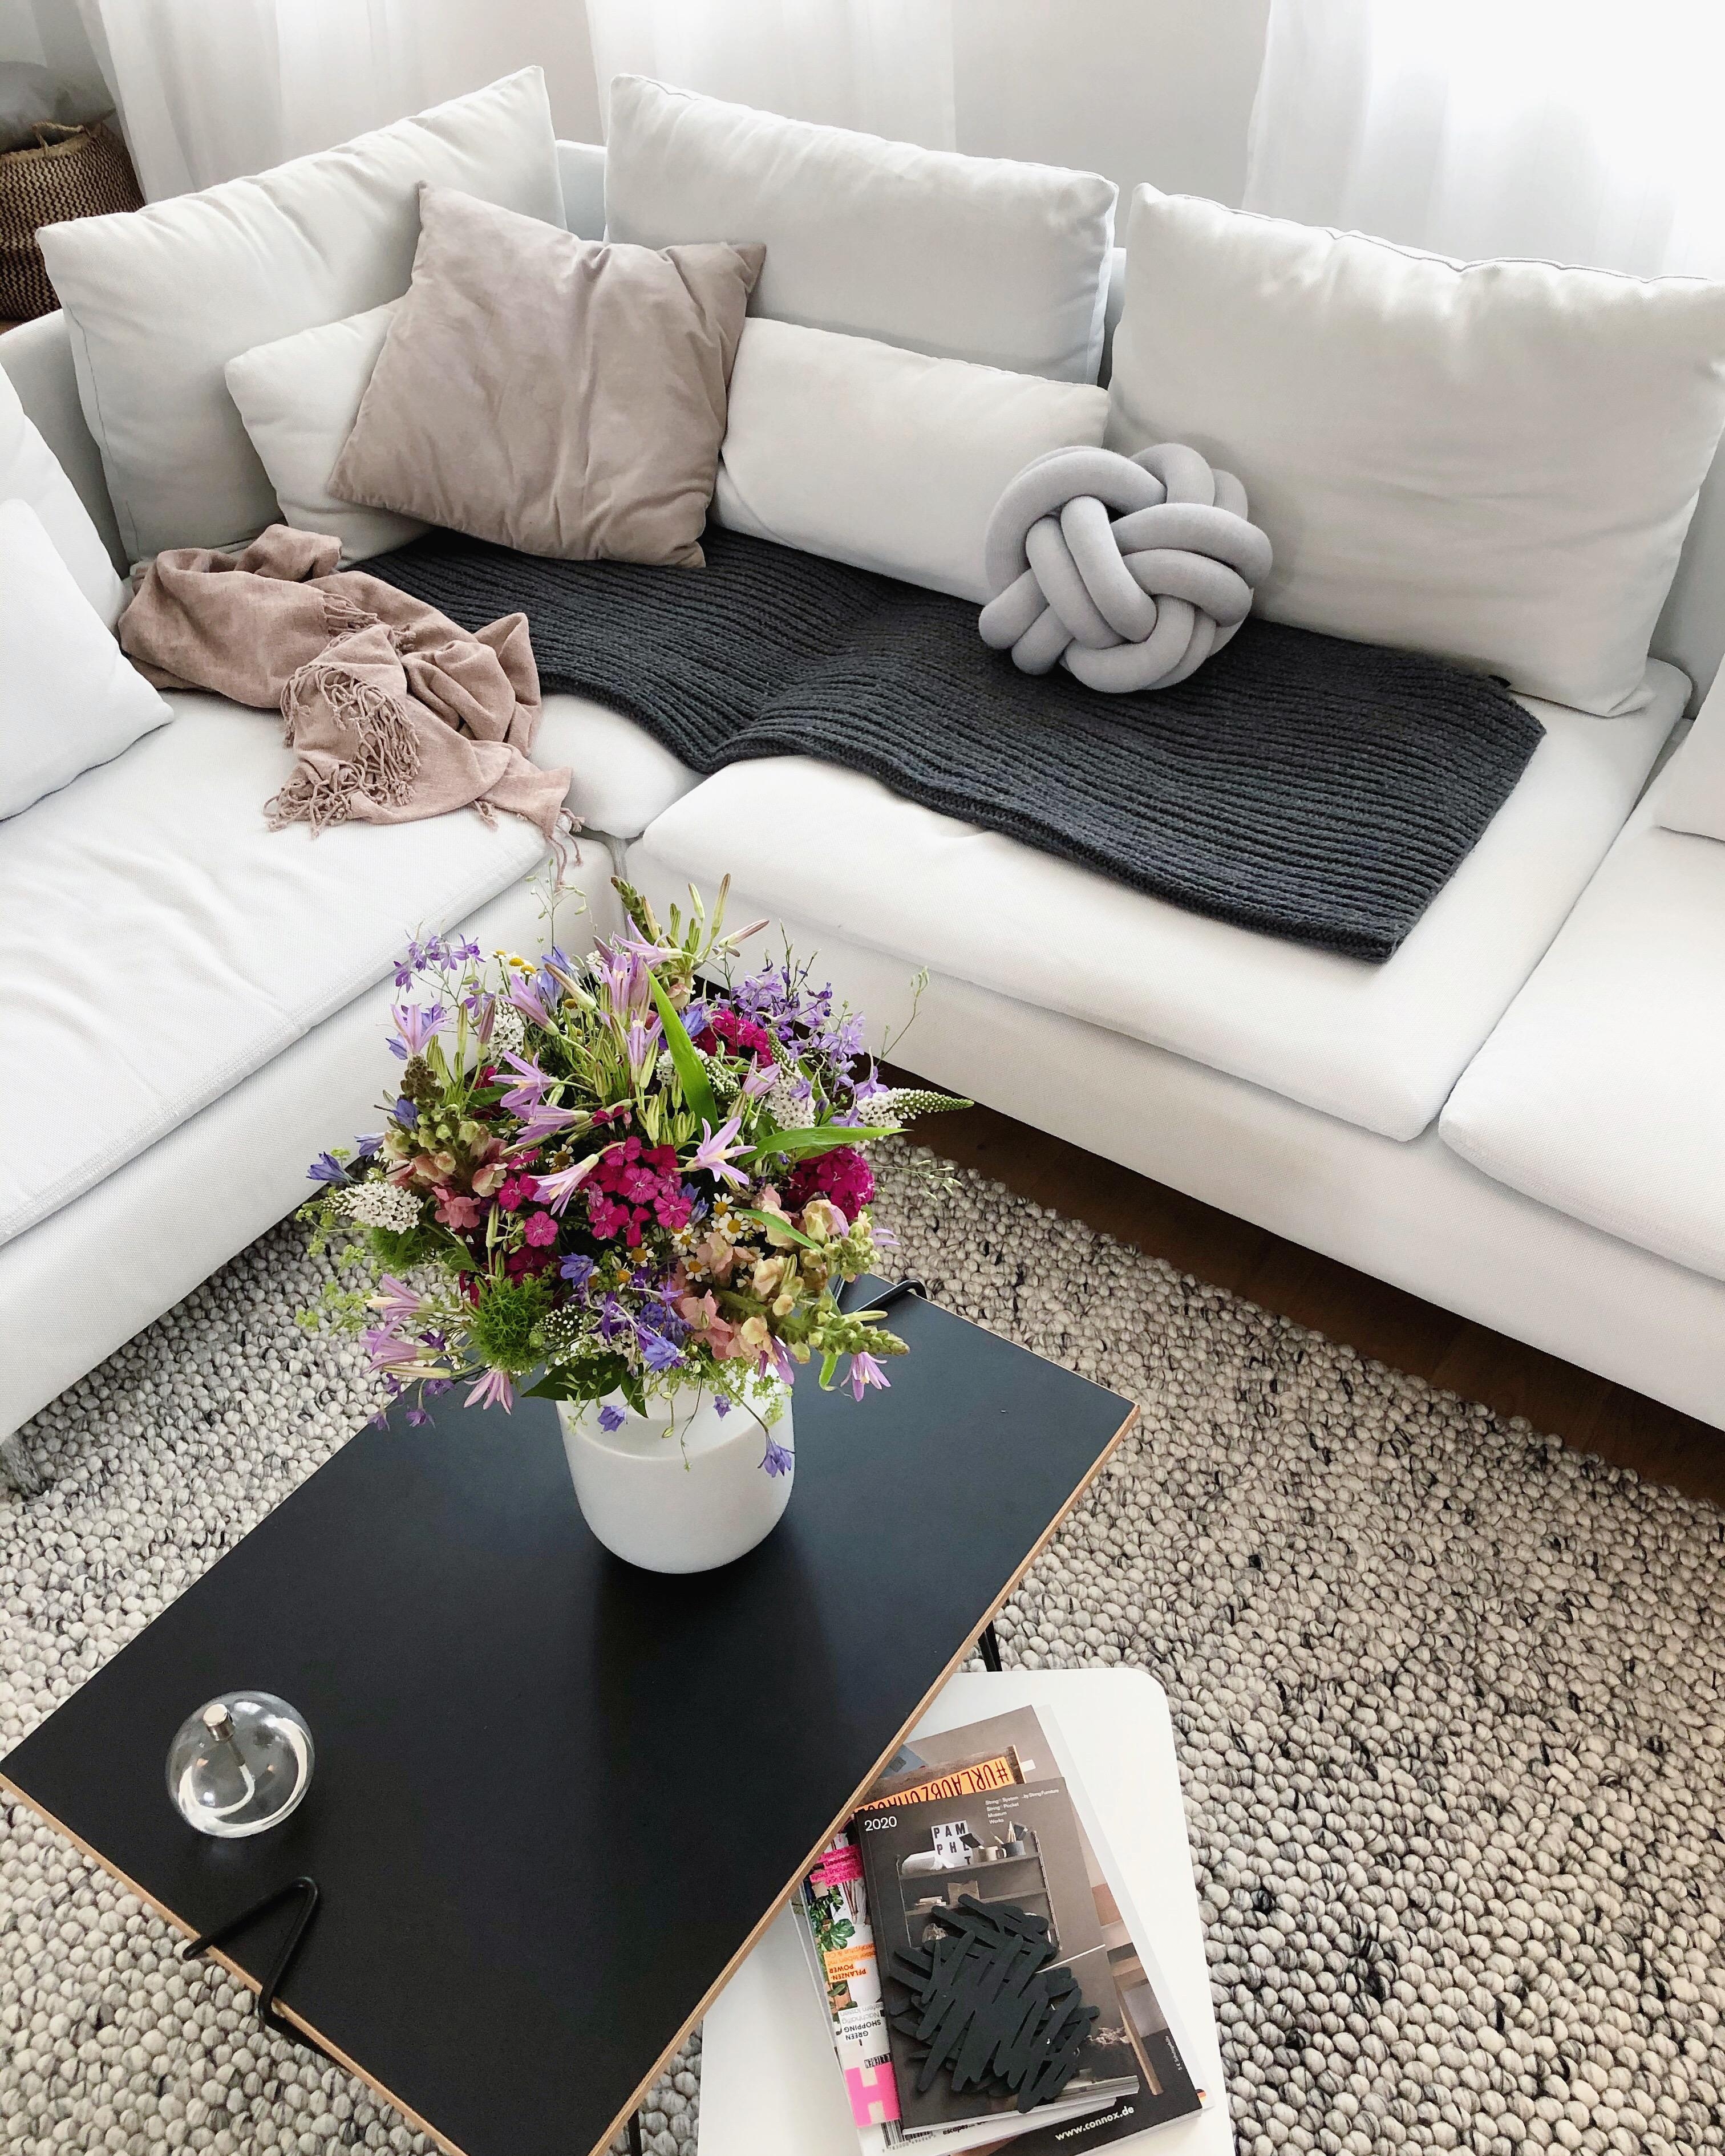 Das Beste am Tag gestern 🤪😌
#couch #couchstyle #wohnzimmer #livingroom #sofa #kissen #freshflowers #flowers